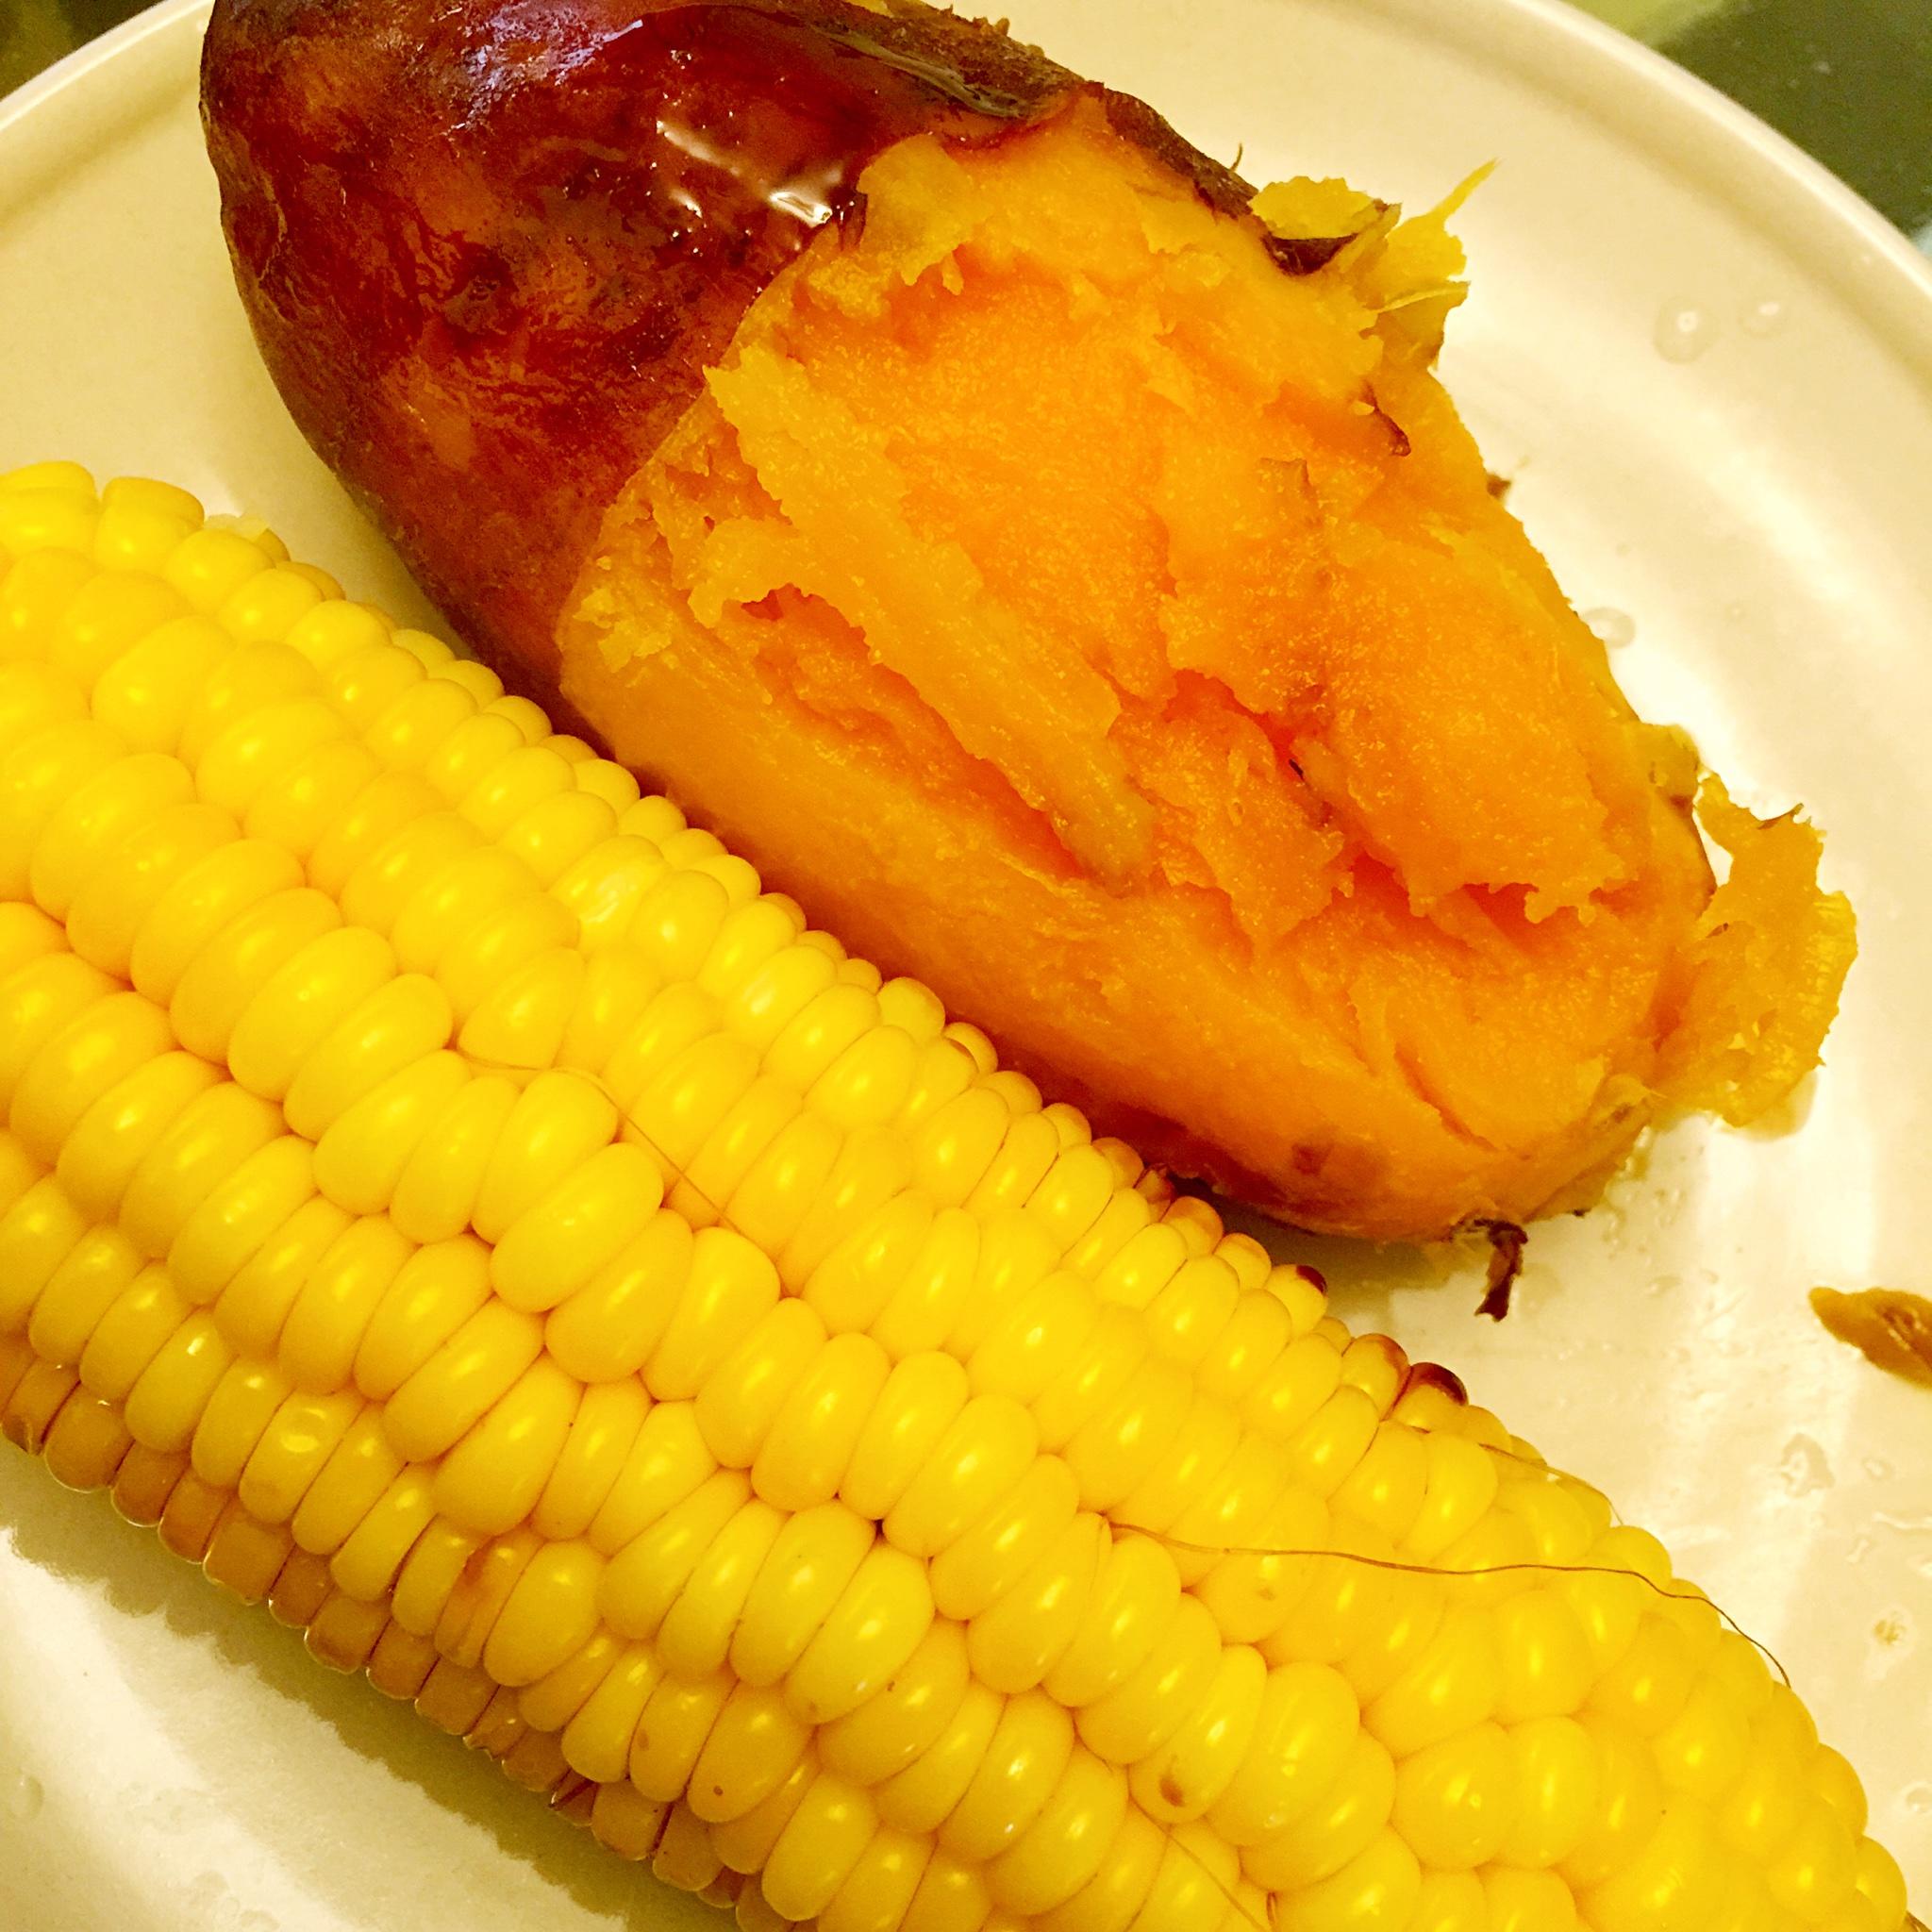 电饭煲版-烀地瓜、玉米 超级香甜